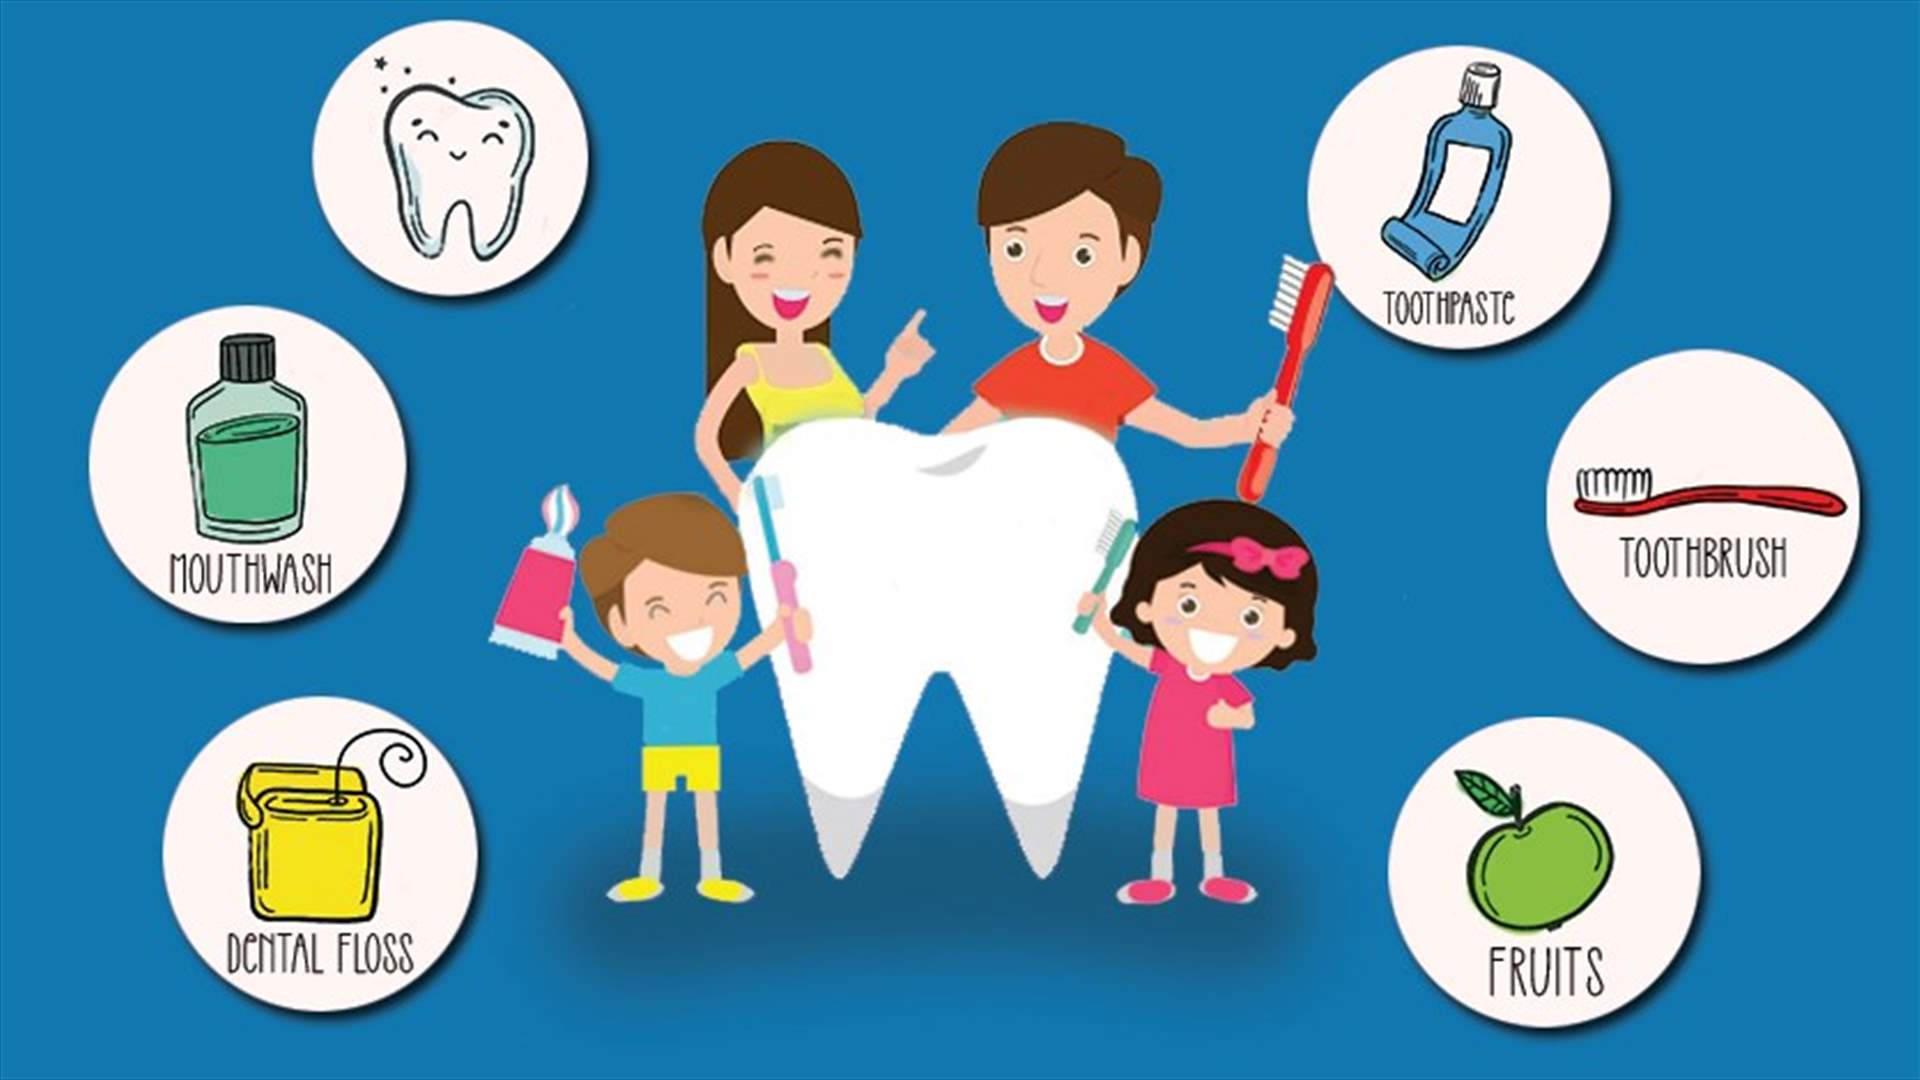 أيها الأهل... إليكم هذه المعلومات المهمة عن كيفية الاهتمام بصحة أسنان أطفالكم